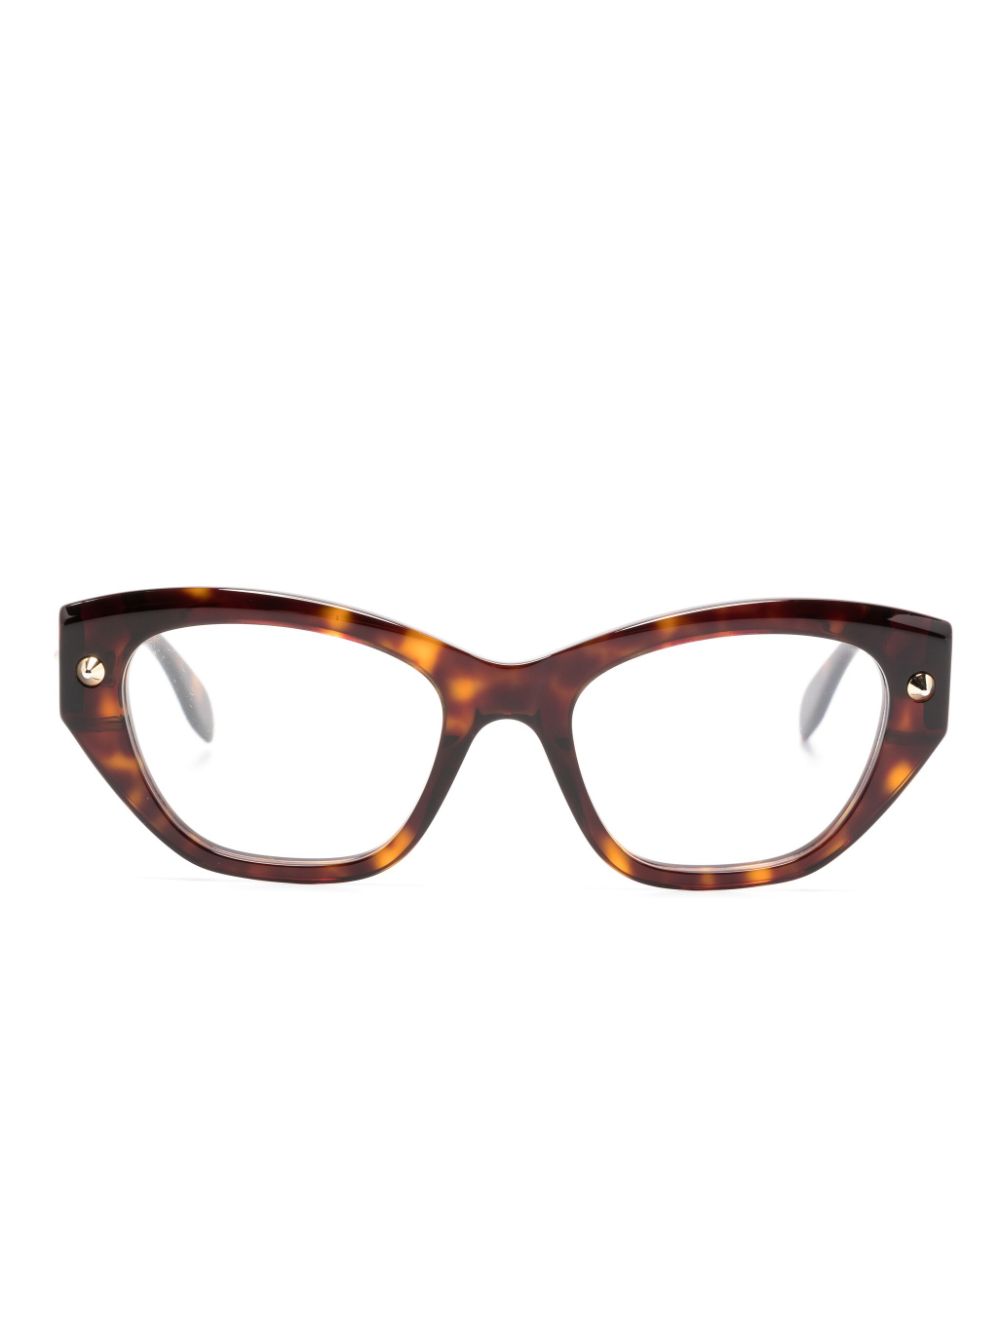 Alexander McQueen Eyewear tortoiseshell cat-eye frame glasses - Brown